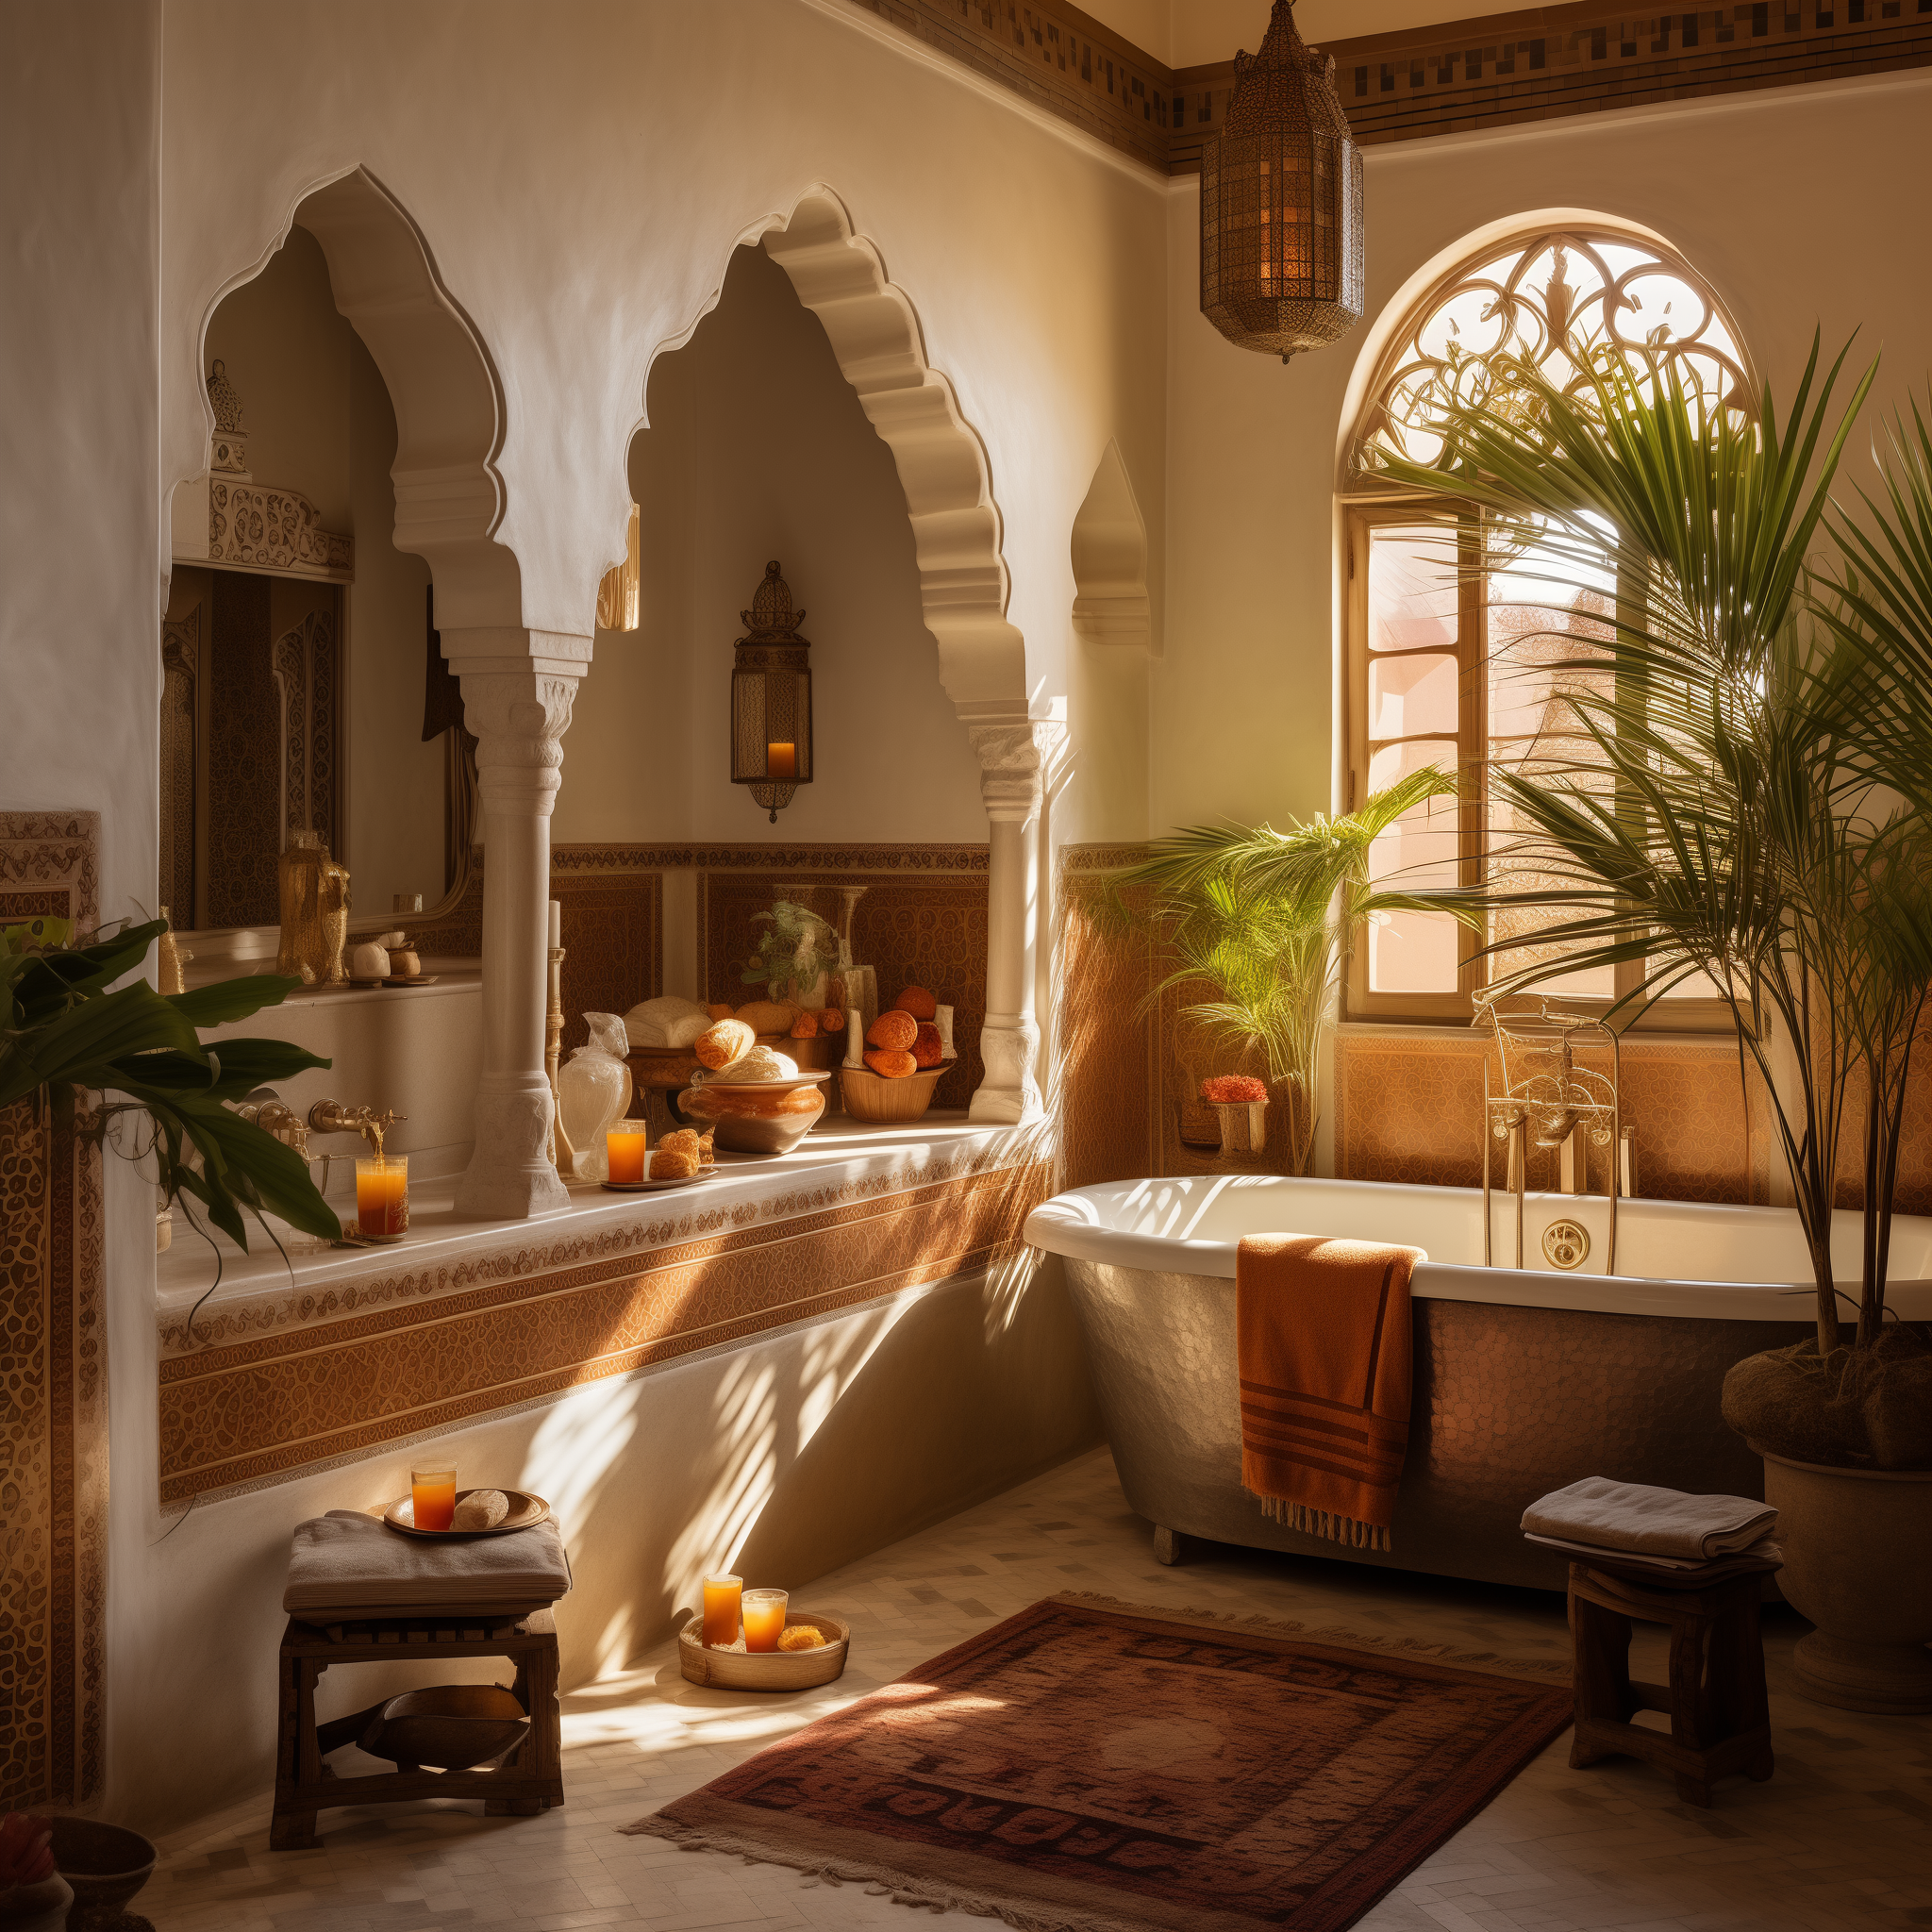 moroccan bathroom ideas decor style design inspired interior architecture theme